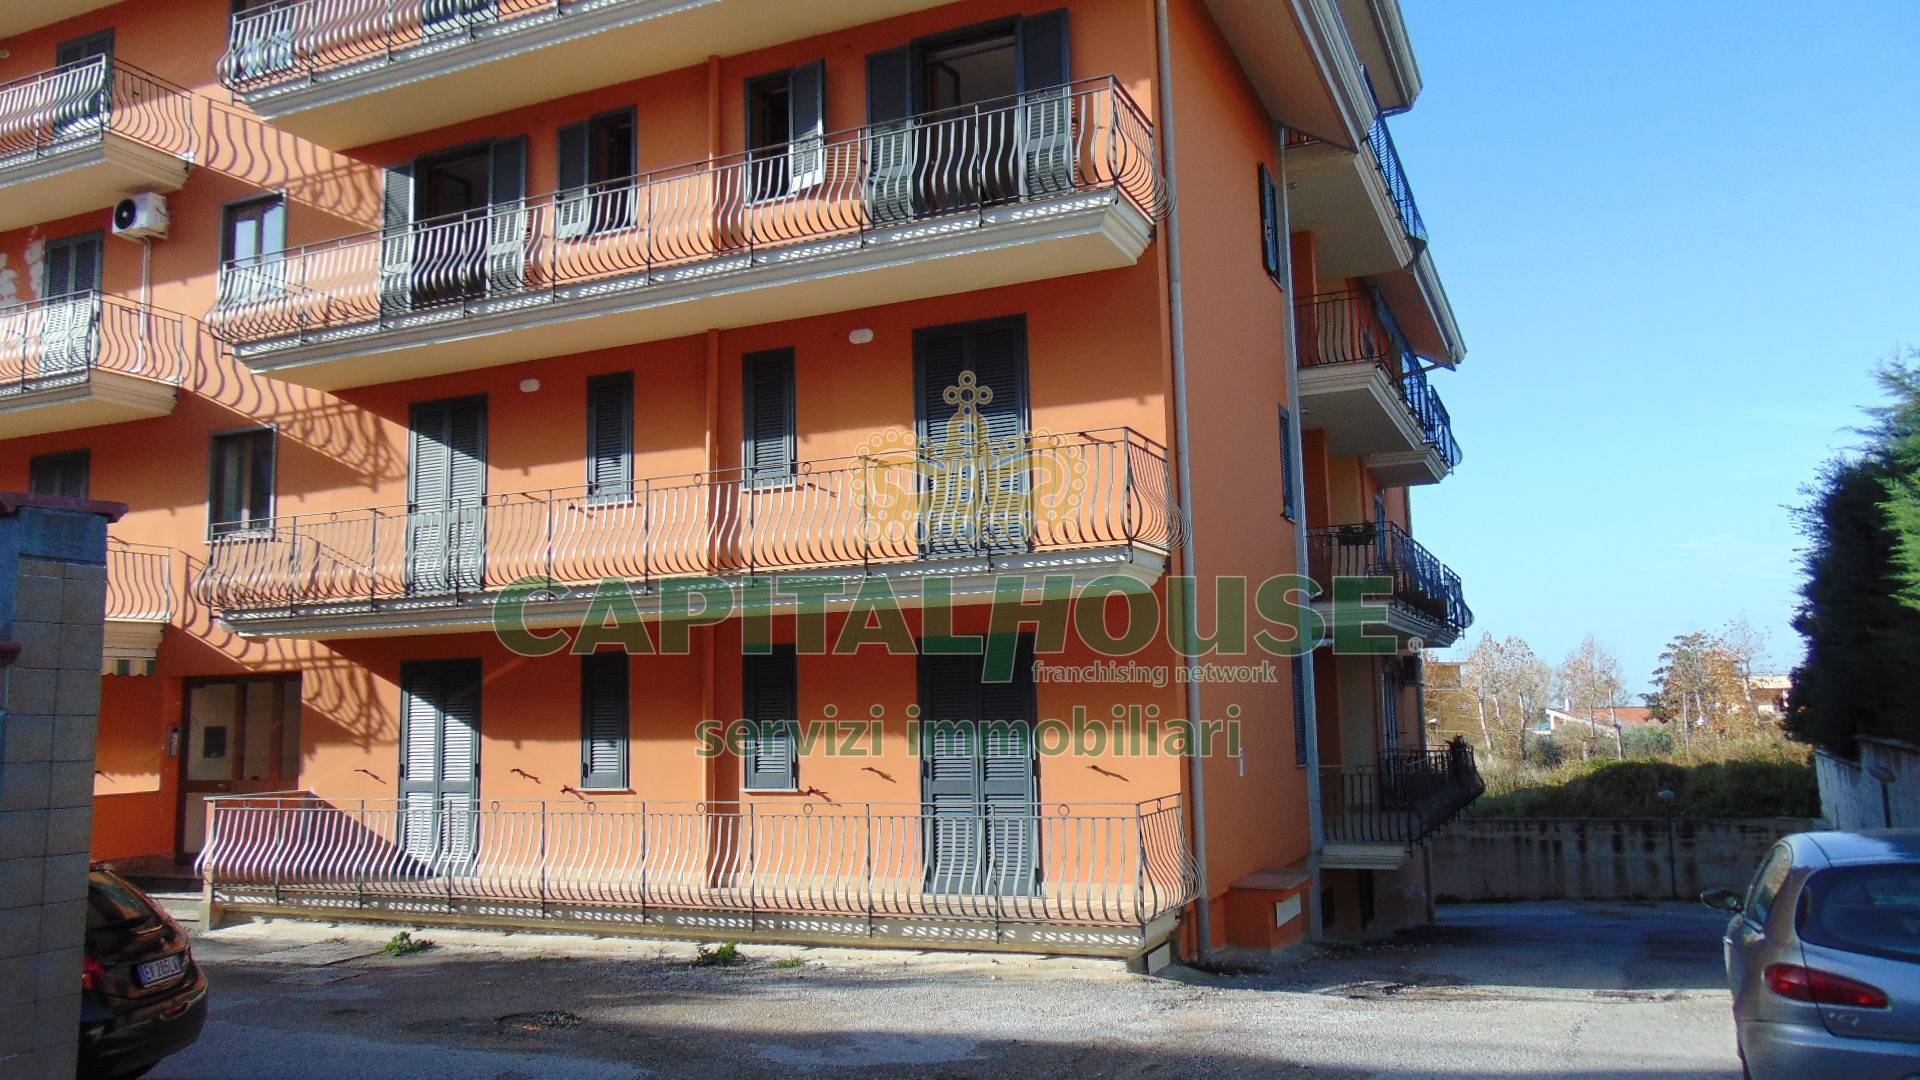 Appartamento in vendita a Sirignano, 3 locali, prezzo € 130.000 | CambioCasa.it